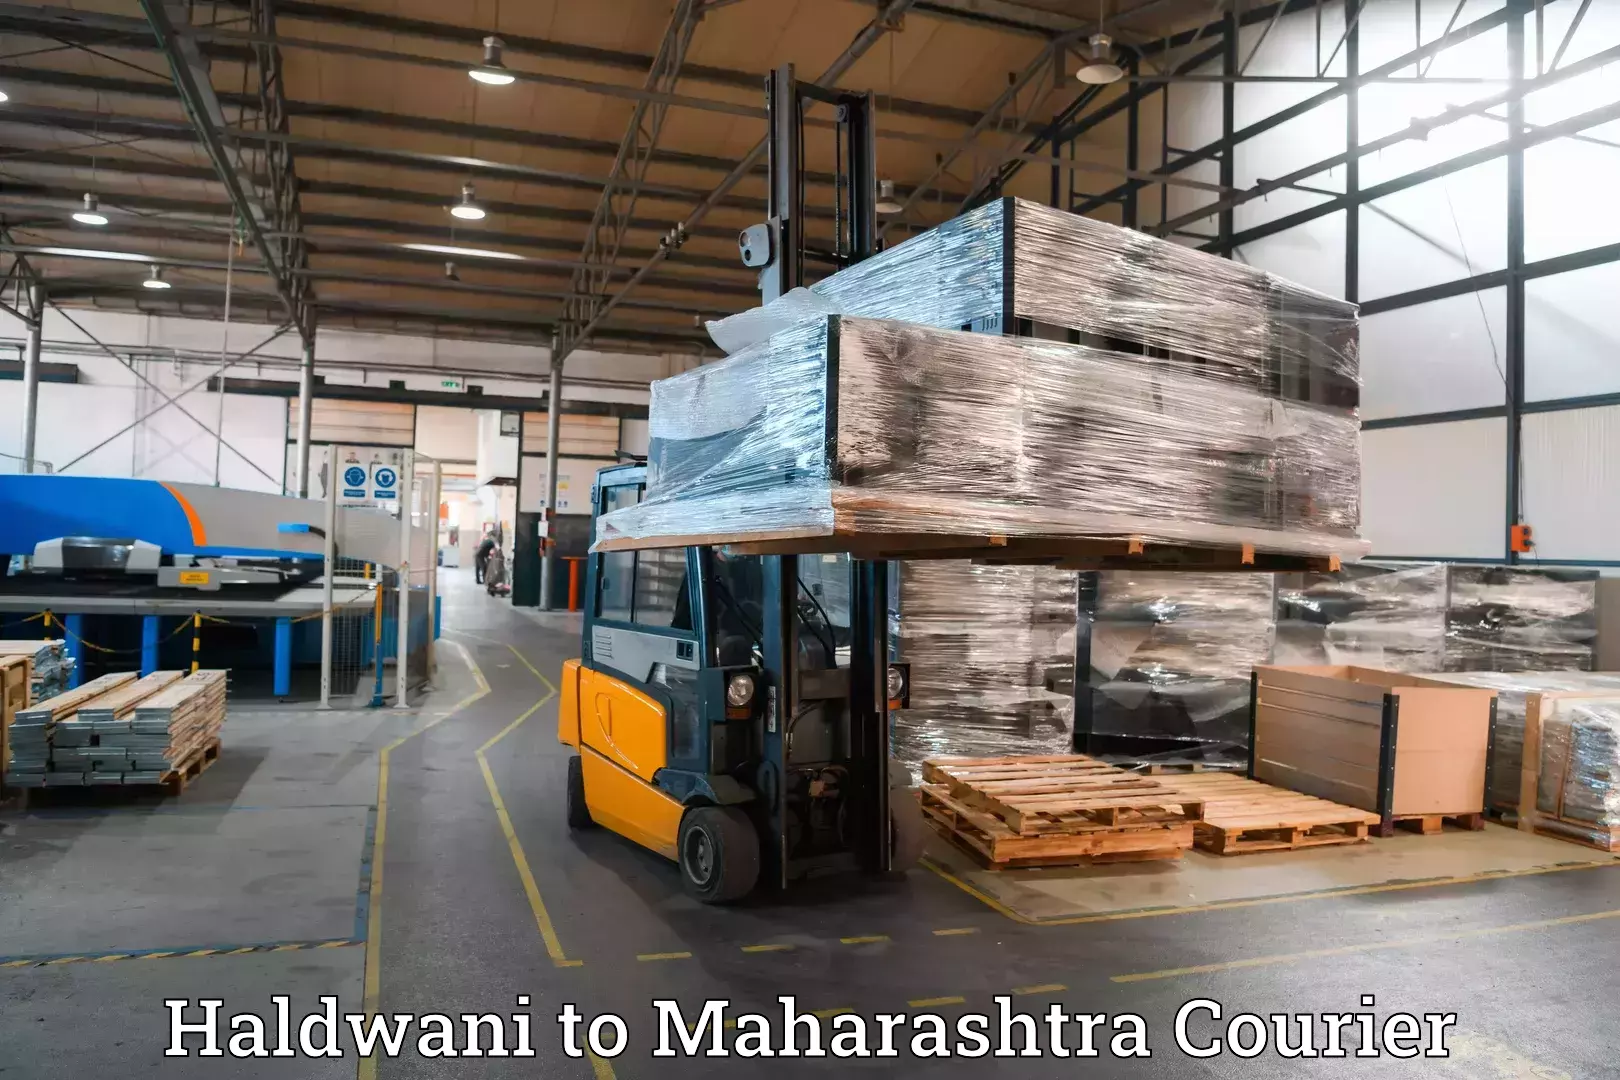 Luggage shipment specialists Haldwani to Kalyan